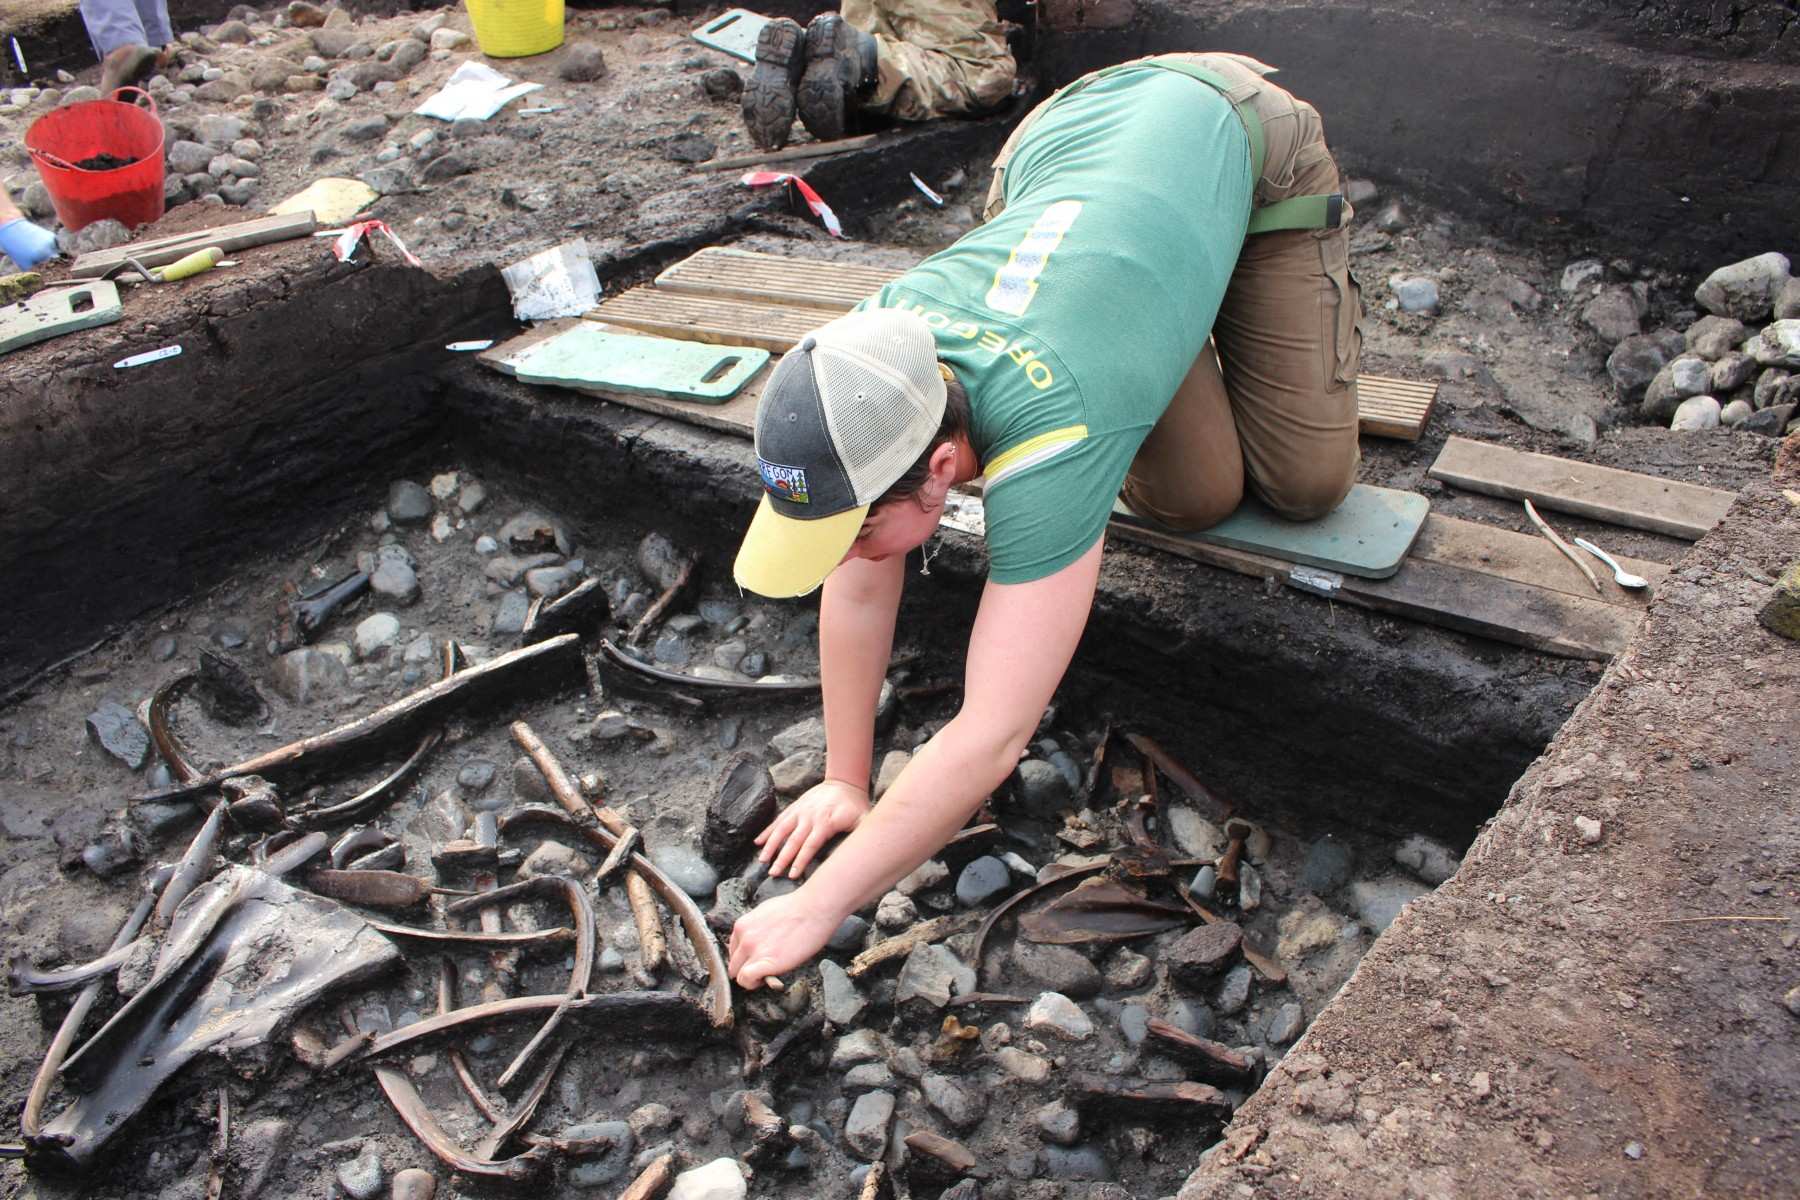 Déier Schanken, Handwierksgeschir a Waffen, zesumme mat rare Beweiser vun Holzaarbechten, goufen während Ausgruewungen op der Plaz bei Scarborough entdeckt.